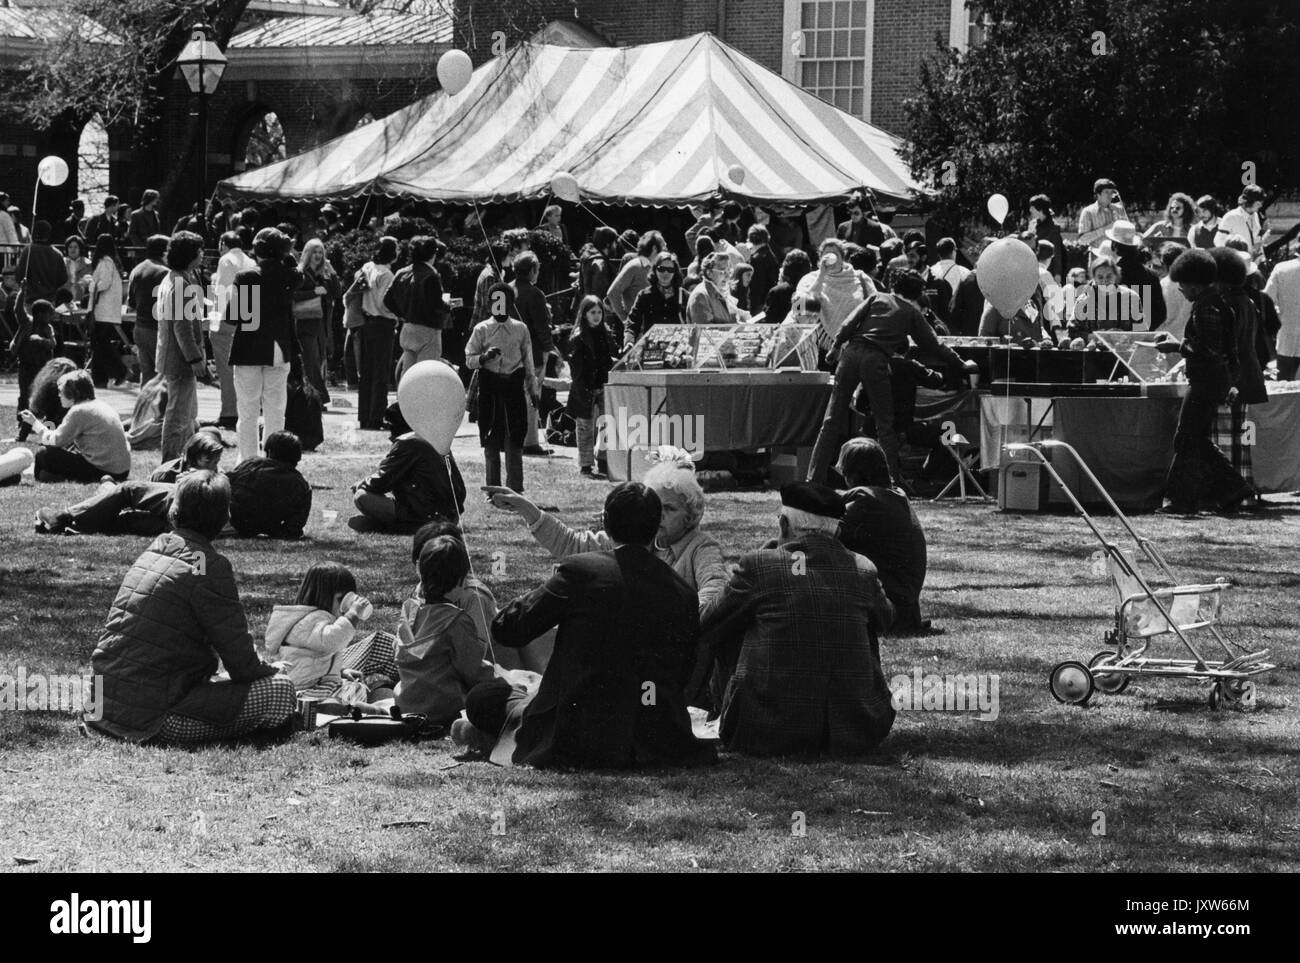 Studenten in eine Gruppe an der Frühjahrsmesse sitzen, eine Feder, Karneval, im Freien, Anbieter Zelte und einer großen Masse im Hintergrund, an der Johns Hopkins University, 1972. Stockfoto